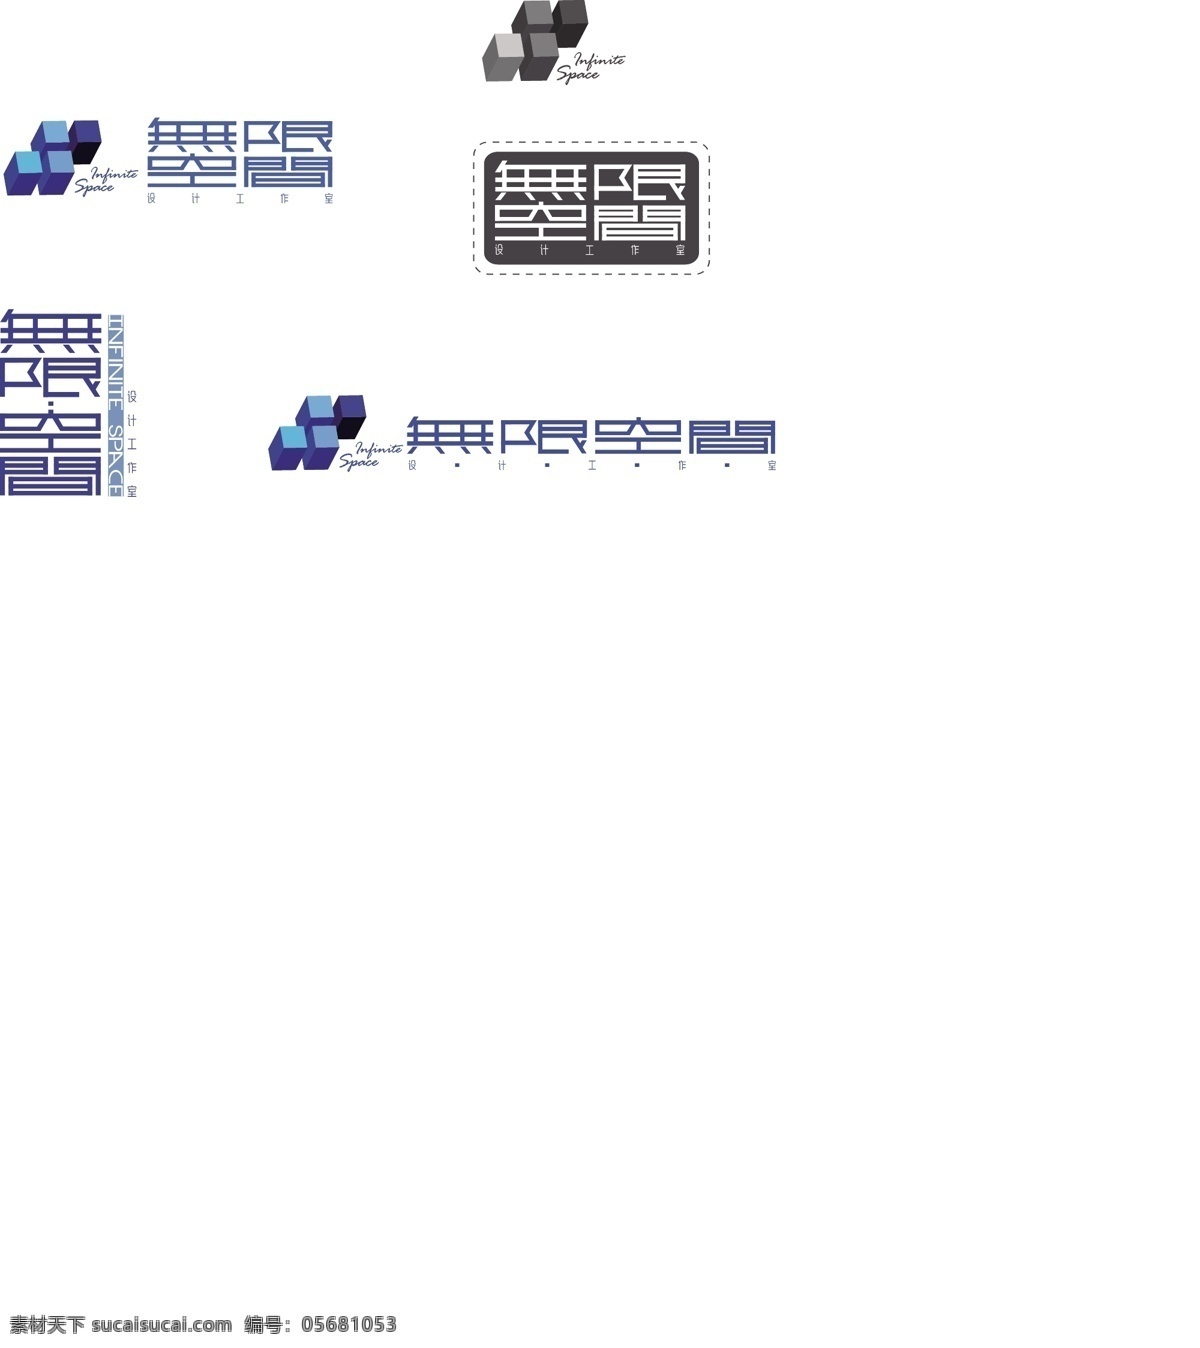 无限 空间 logo 标识标志图标 企业 标志 装饰设计 无限空间 矢量 psd源文件 logo设计